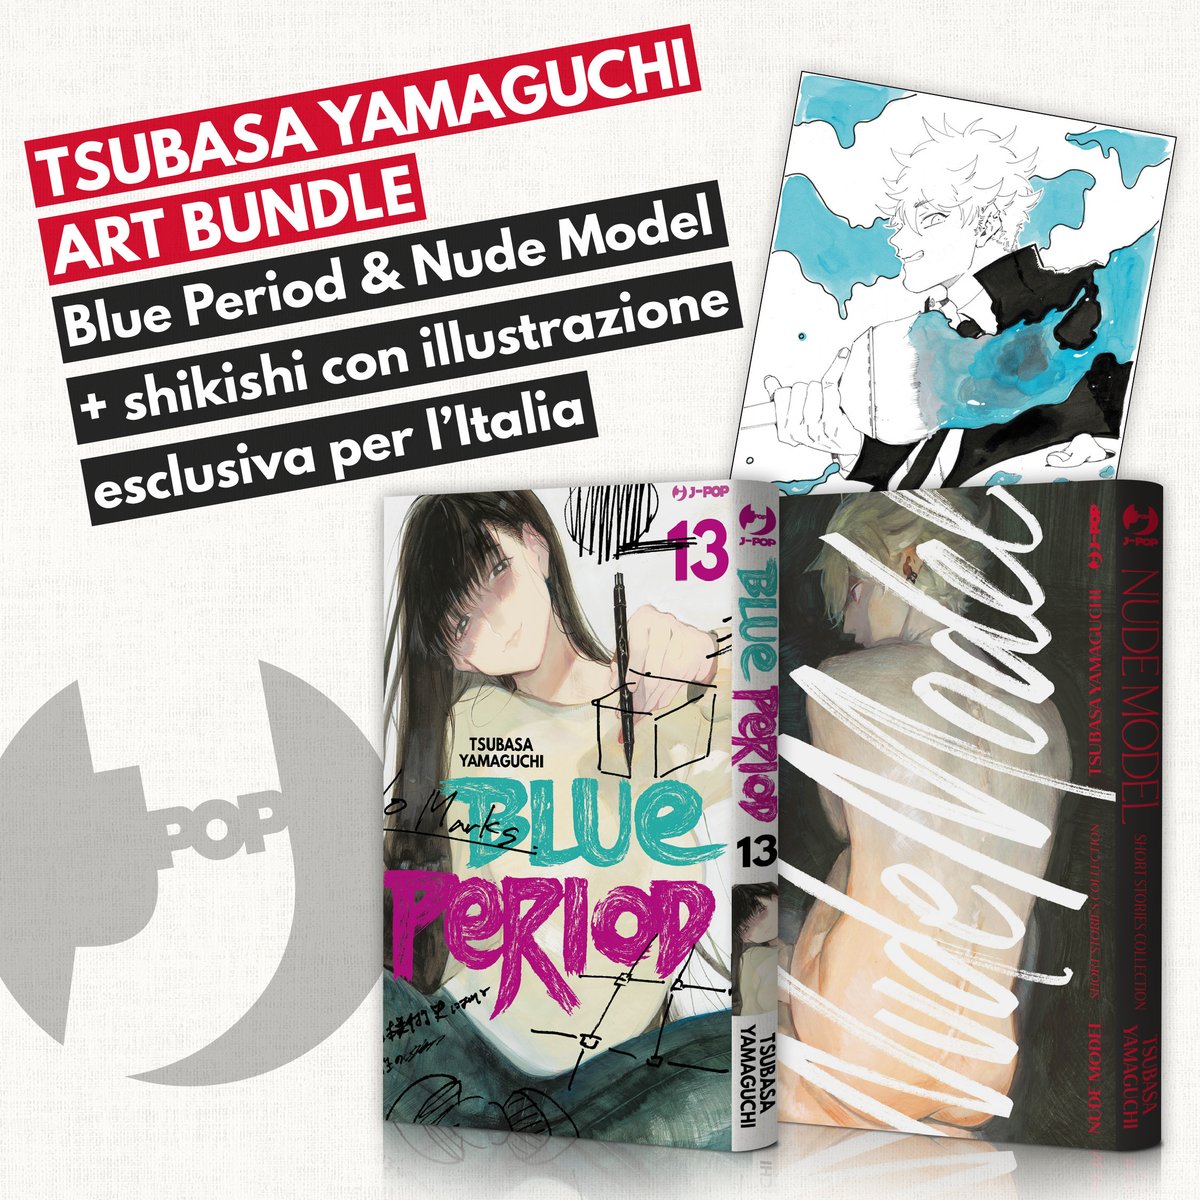 La editorial italiana @JPOPMANGA lanzará el próximo 2 de mayo un pack con el volumen 13 de Blue Period y Nude Model de Tsubasa Yamaguchi. La edición contará con un shikishi exclusivo. 15,40€